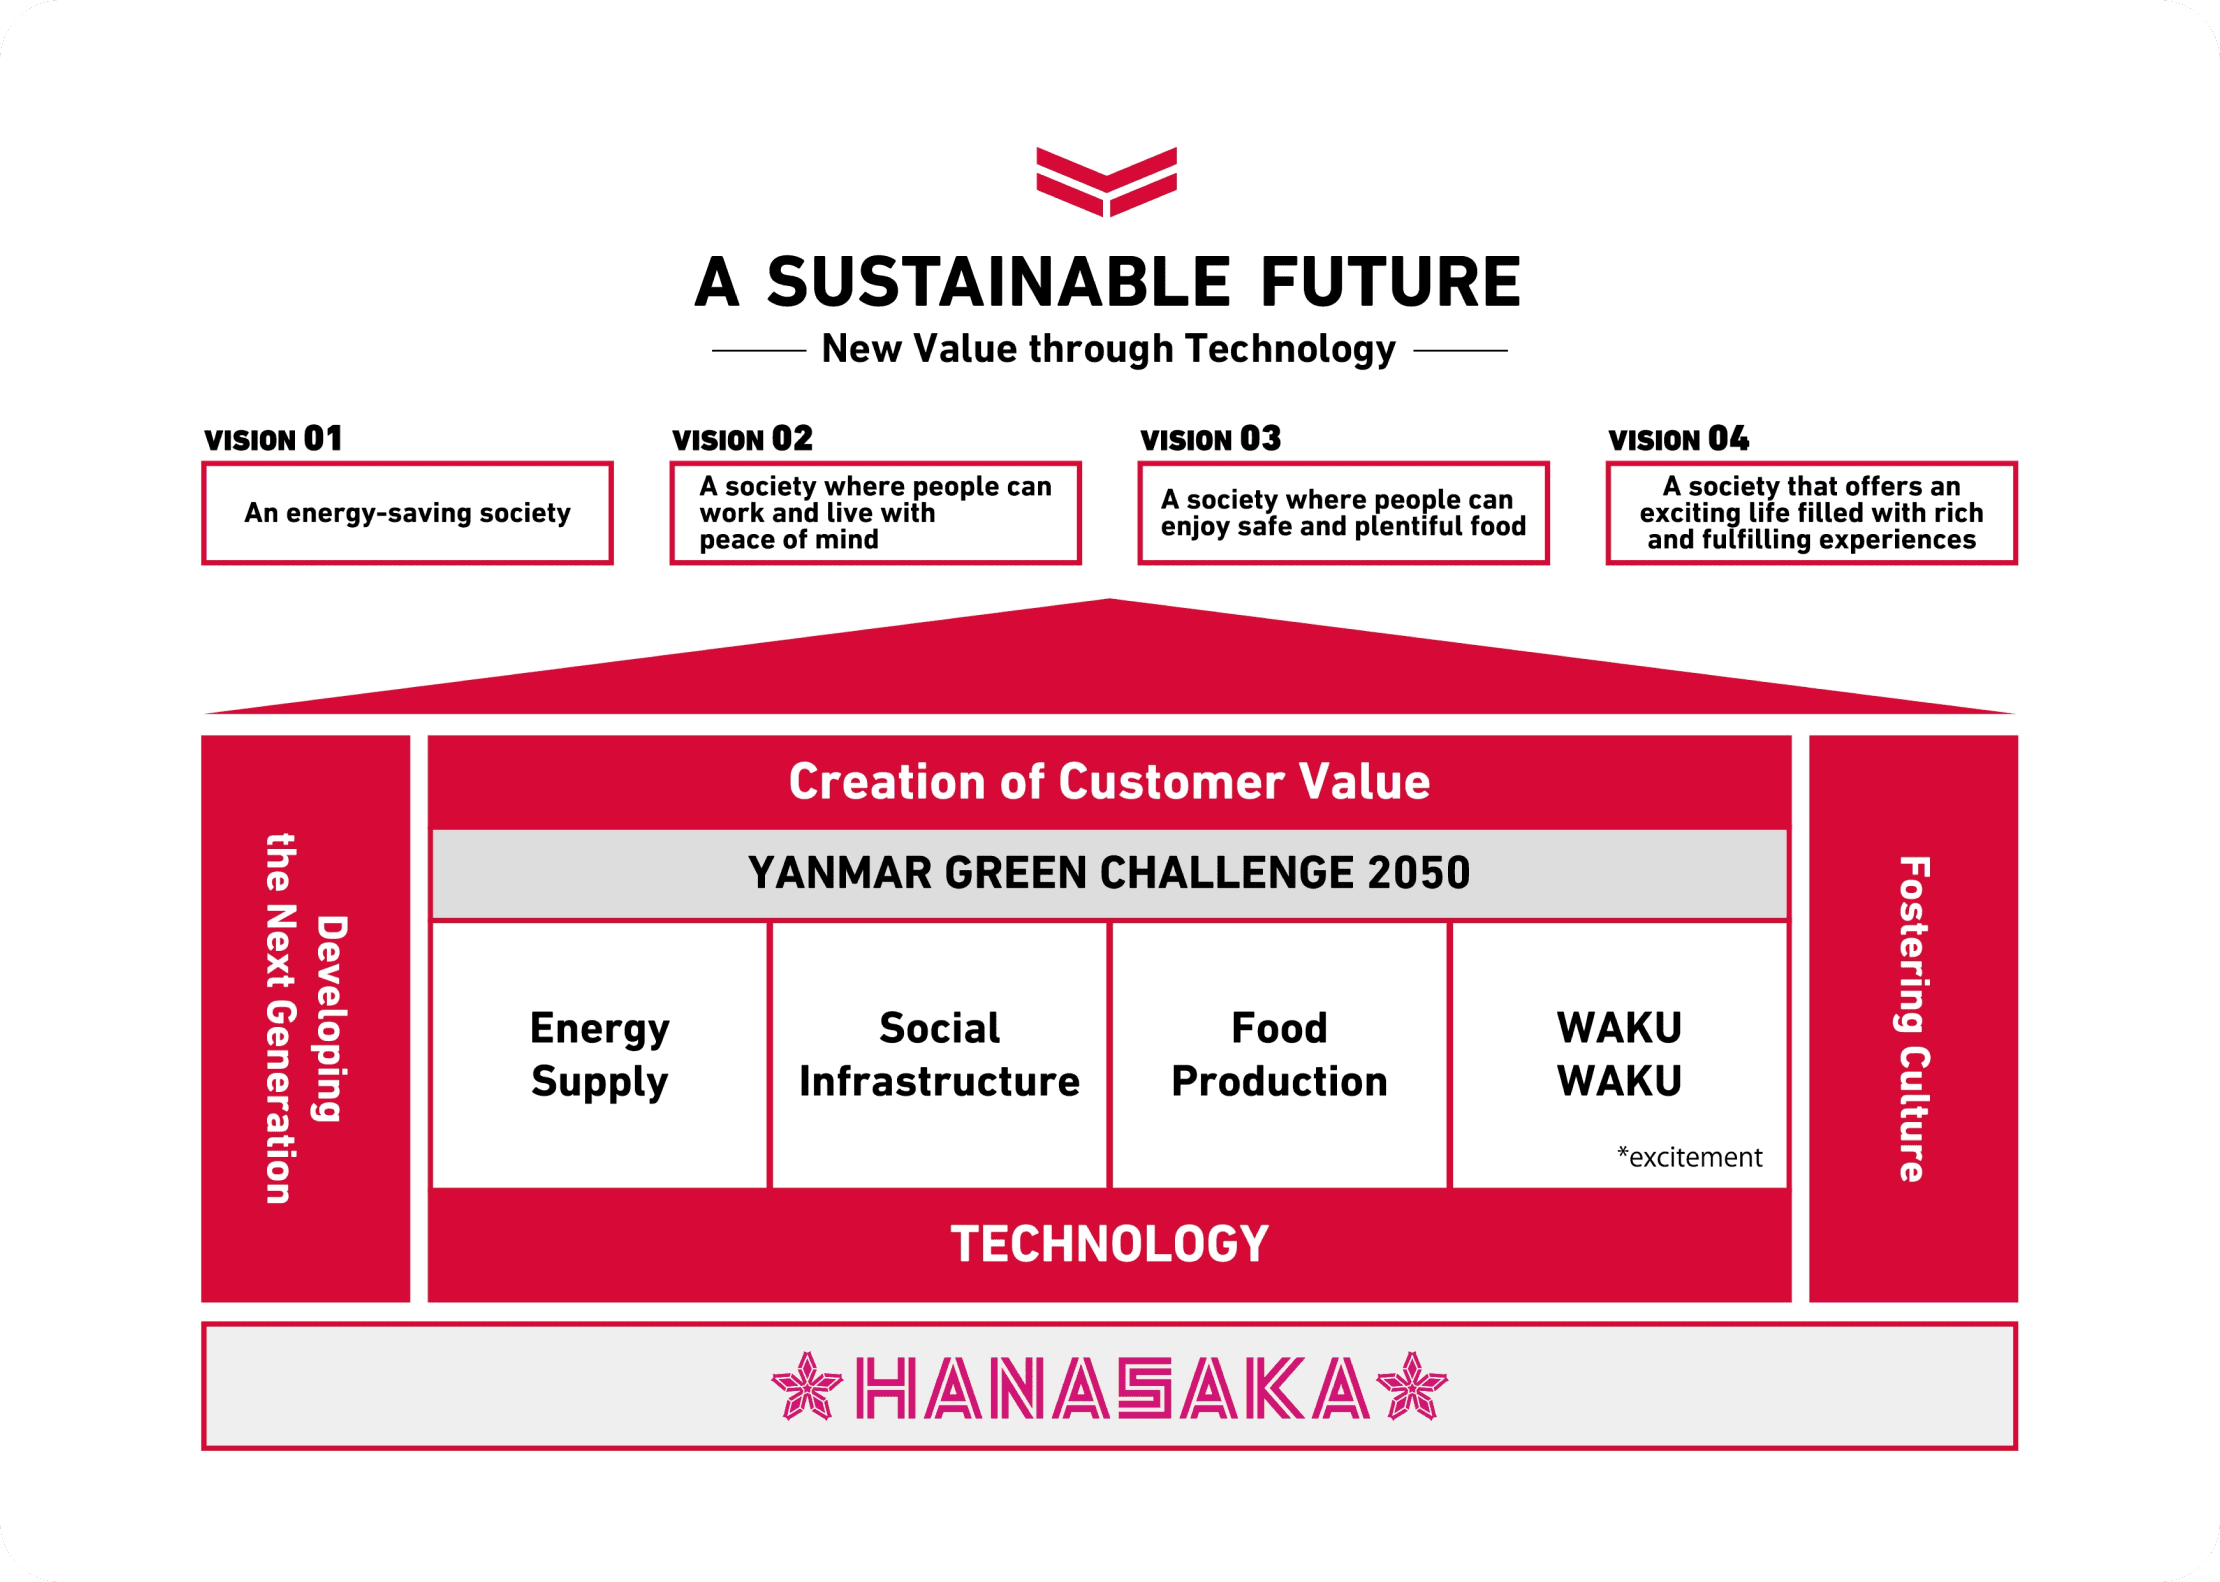 Sơ đồ thể hiện từng hoạt động kinh doanh, bốn xã hội trong TẦM NHÌN TƯƠNG LAI và A SUSTAINABLE FUTURE được xây dựng tuần tự trên nền tảng của HANASAKA.